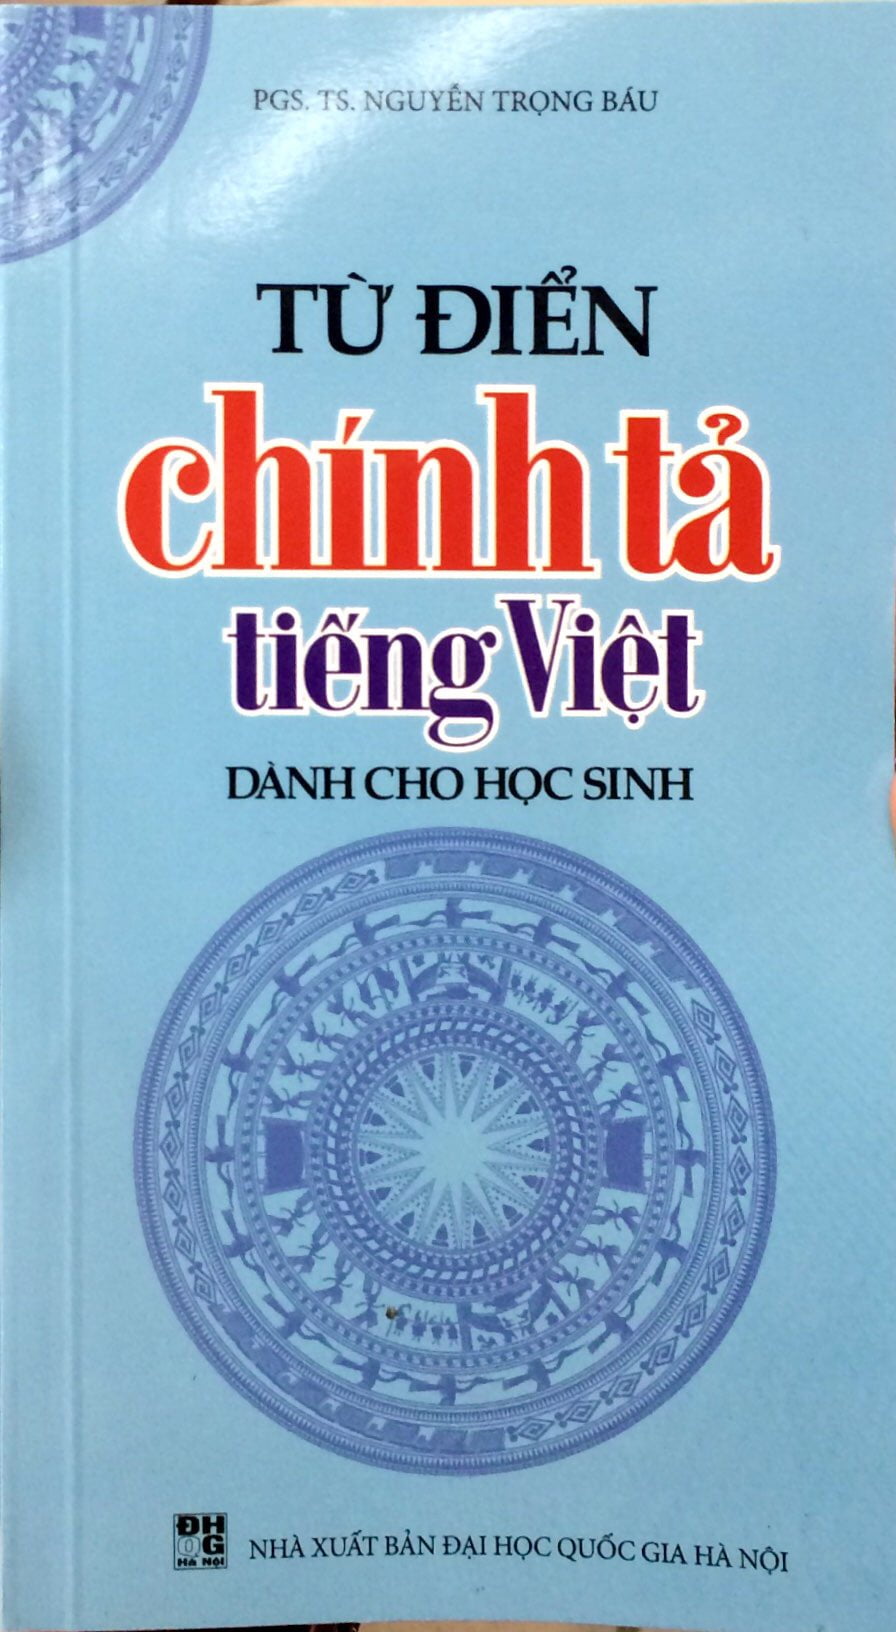 Fahasa - Từ Điển Chính Tả Tiếng Việt Dành Cho Học Sinh Khổ Nhỏ